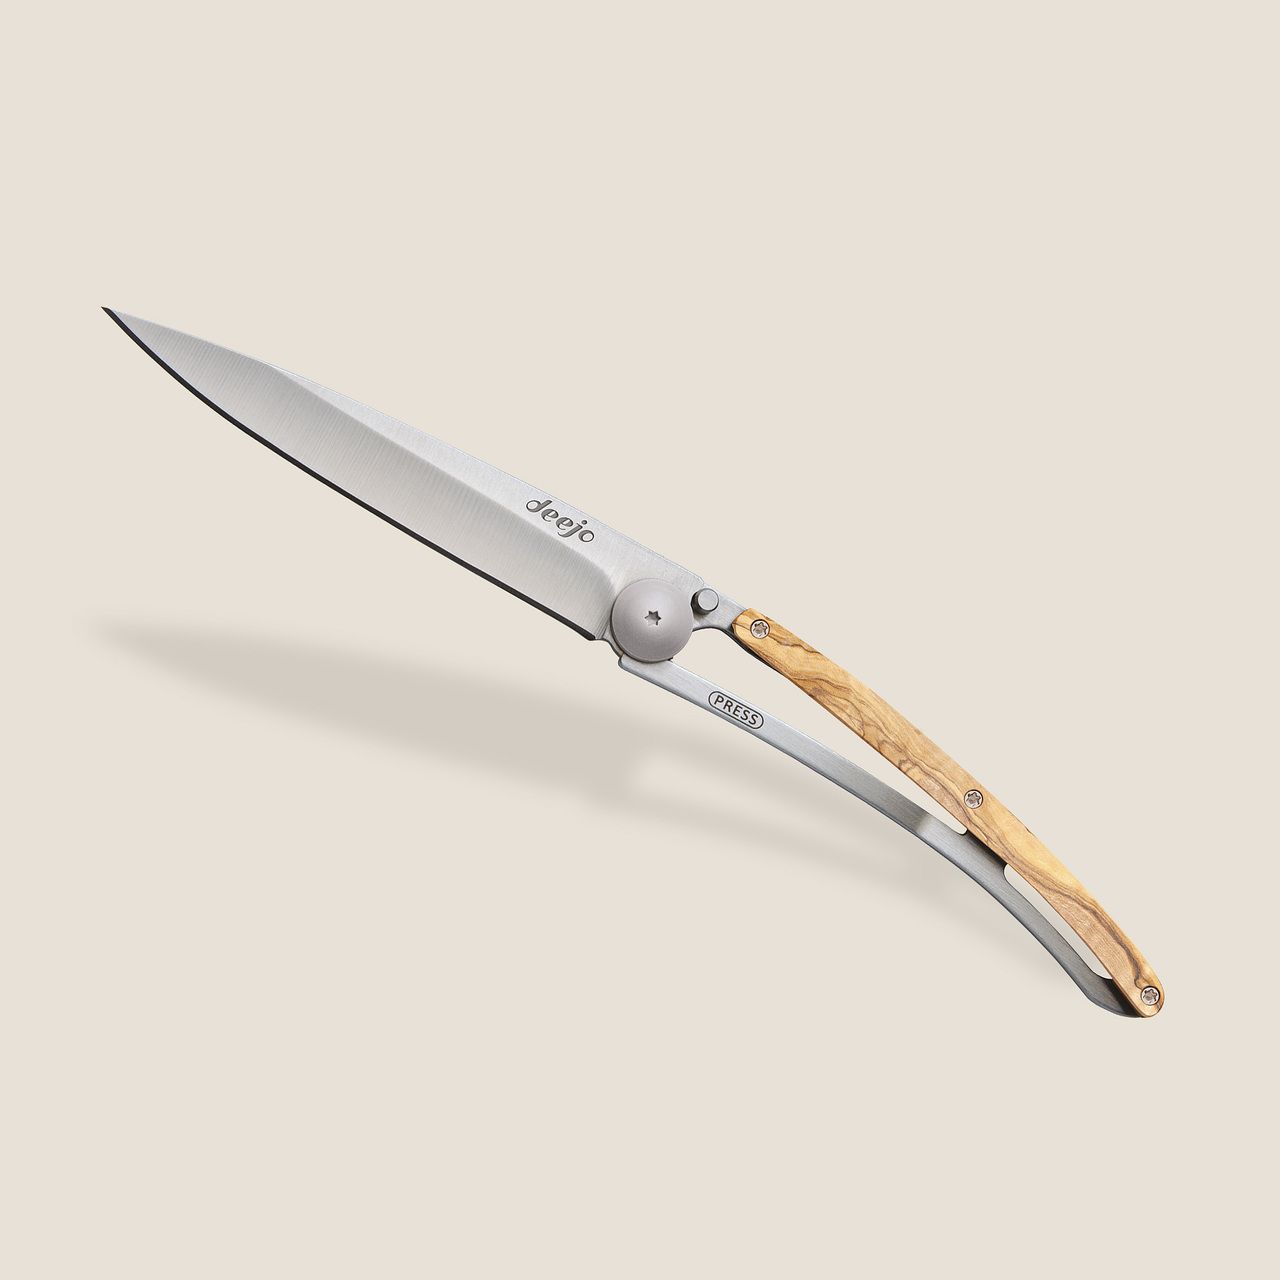 Deejo 37g, Juniper wood / Bicycle - 37 GR (Standard) - POCKET KNIVES